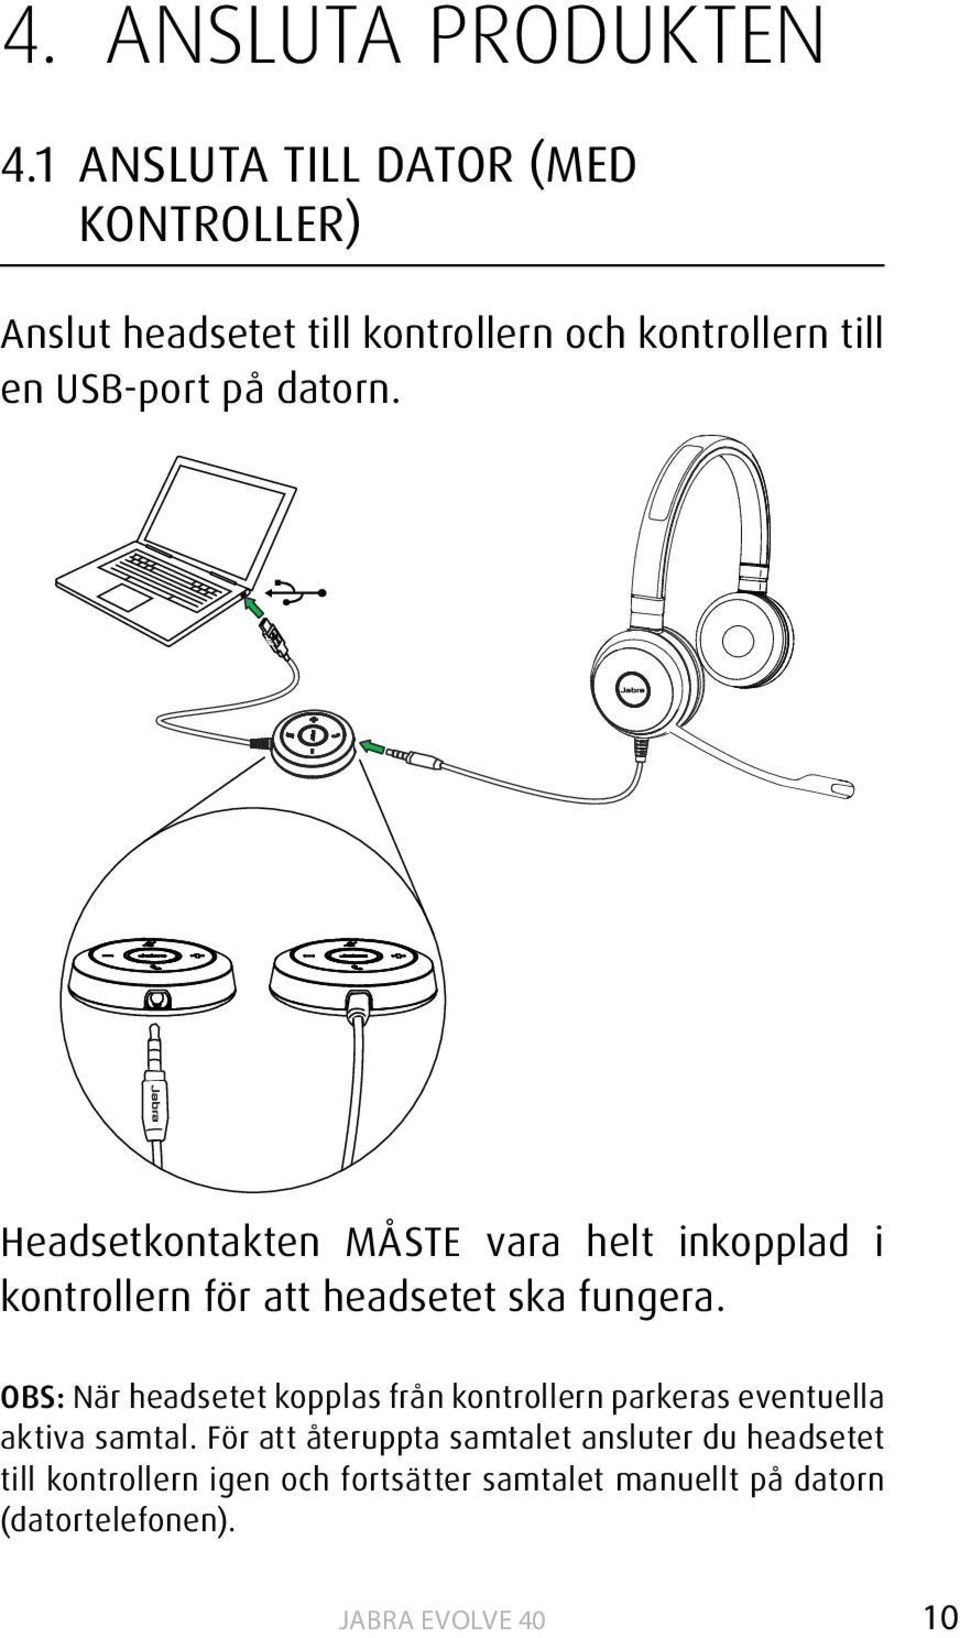 datorn. Headsetkontakten MÅSTE vara helt inkopplad i kontrollern för att headsetet ska fungera.